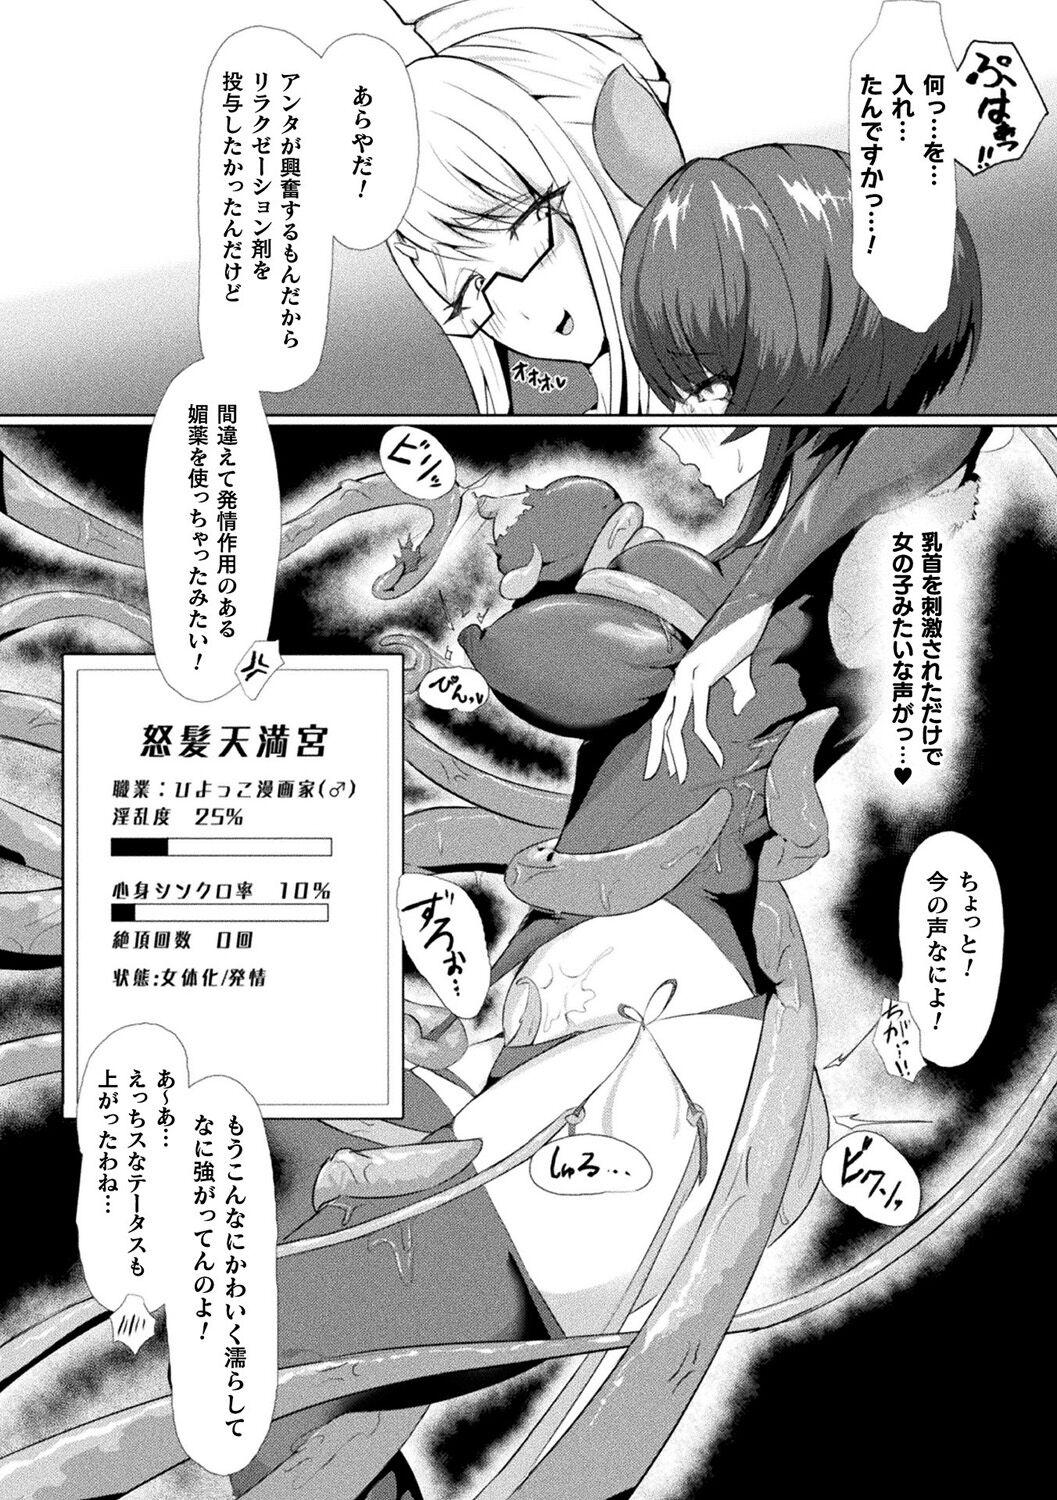 Bessatsu Comic Unreal AI ni Wakaraserareru Jinrui Hen Digital Ban Vol. 2 91